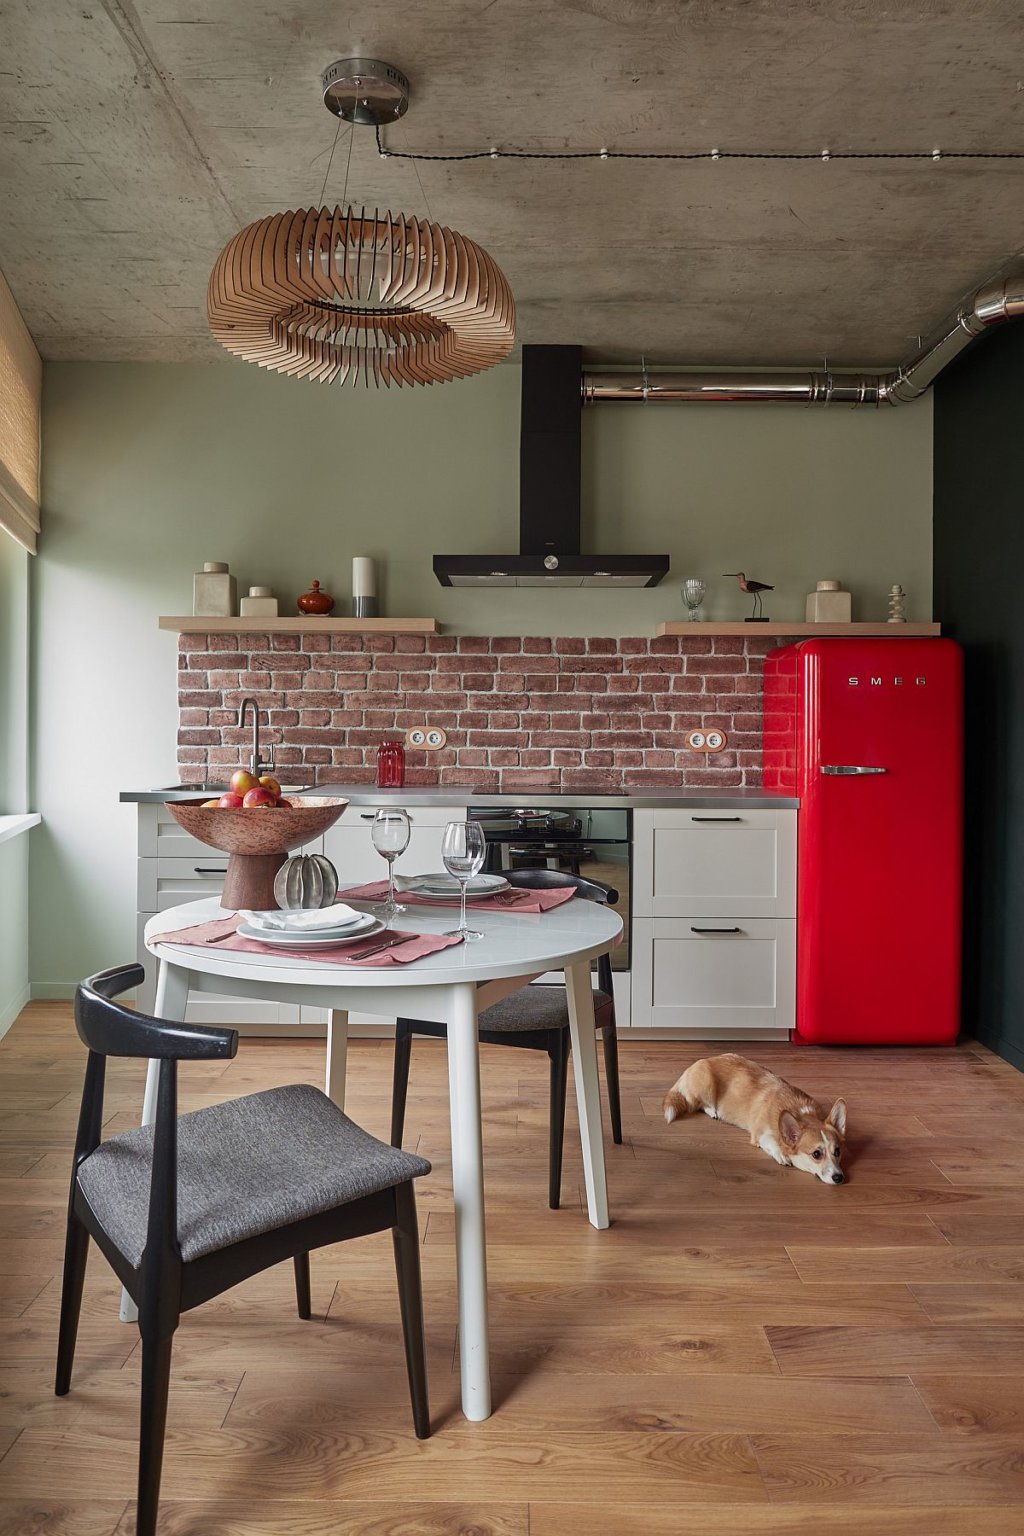 hình ảnh phòng bếp phong cách công nghiệp với điểm nhấn là tủ lạnh màu đỏ